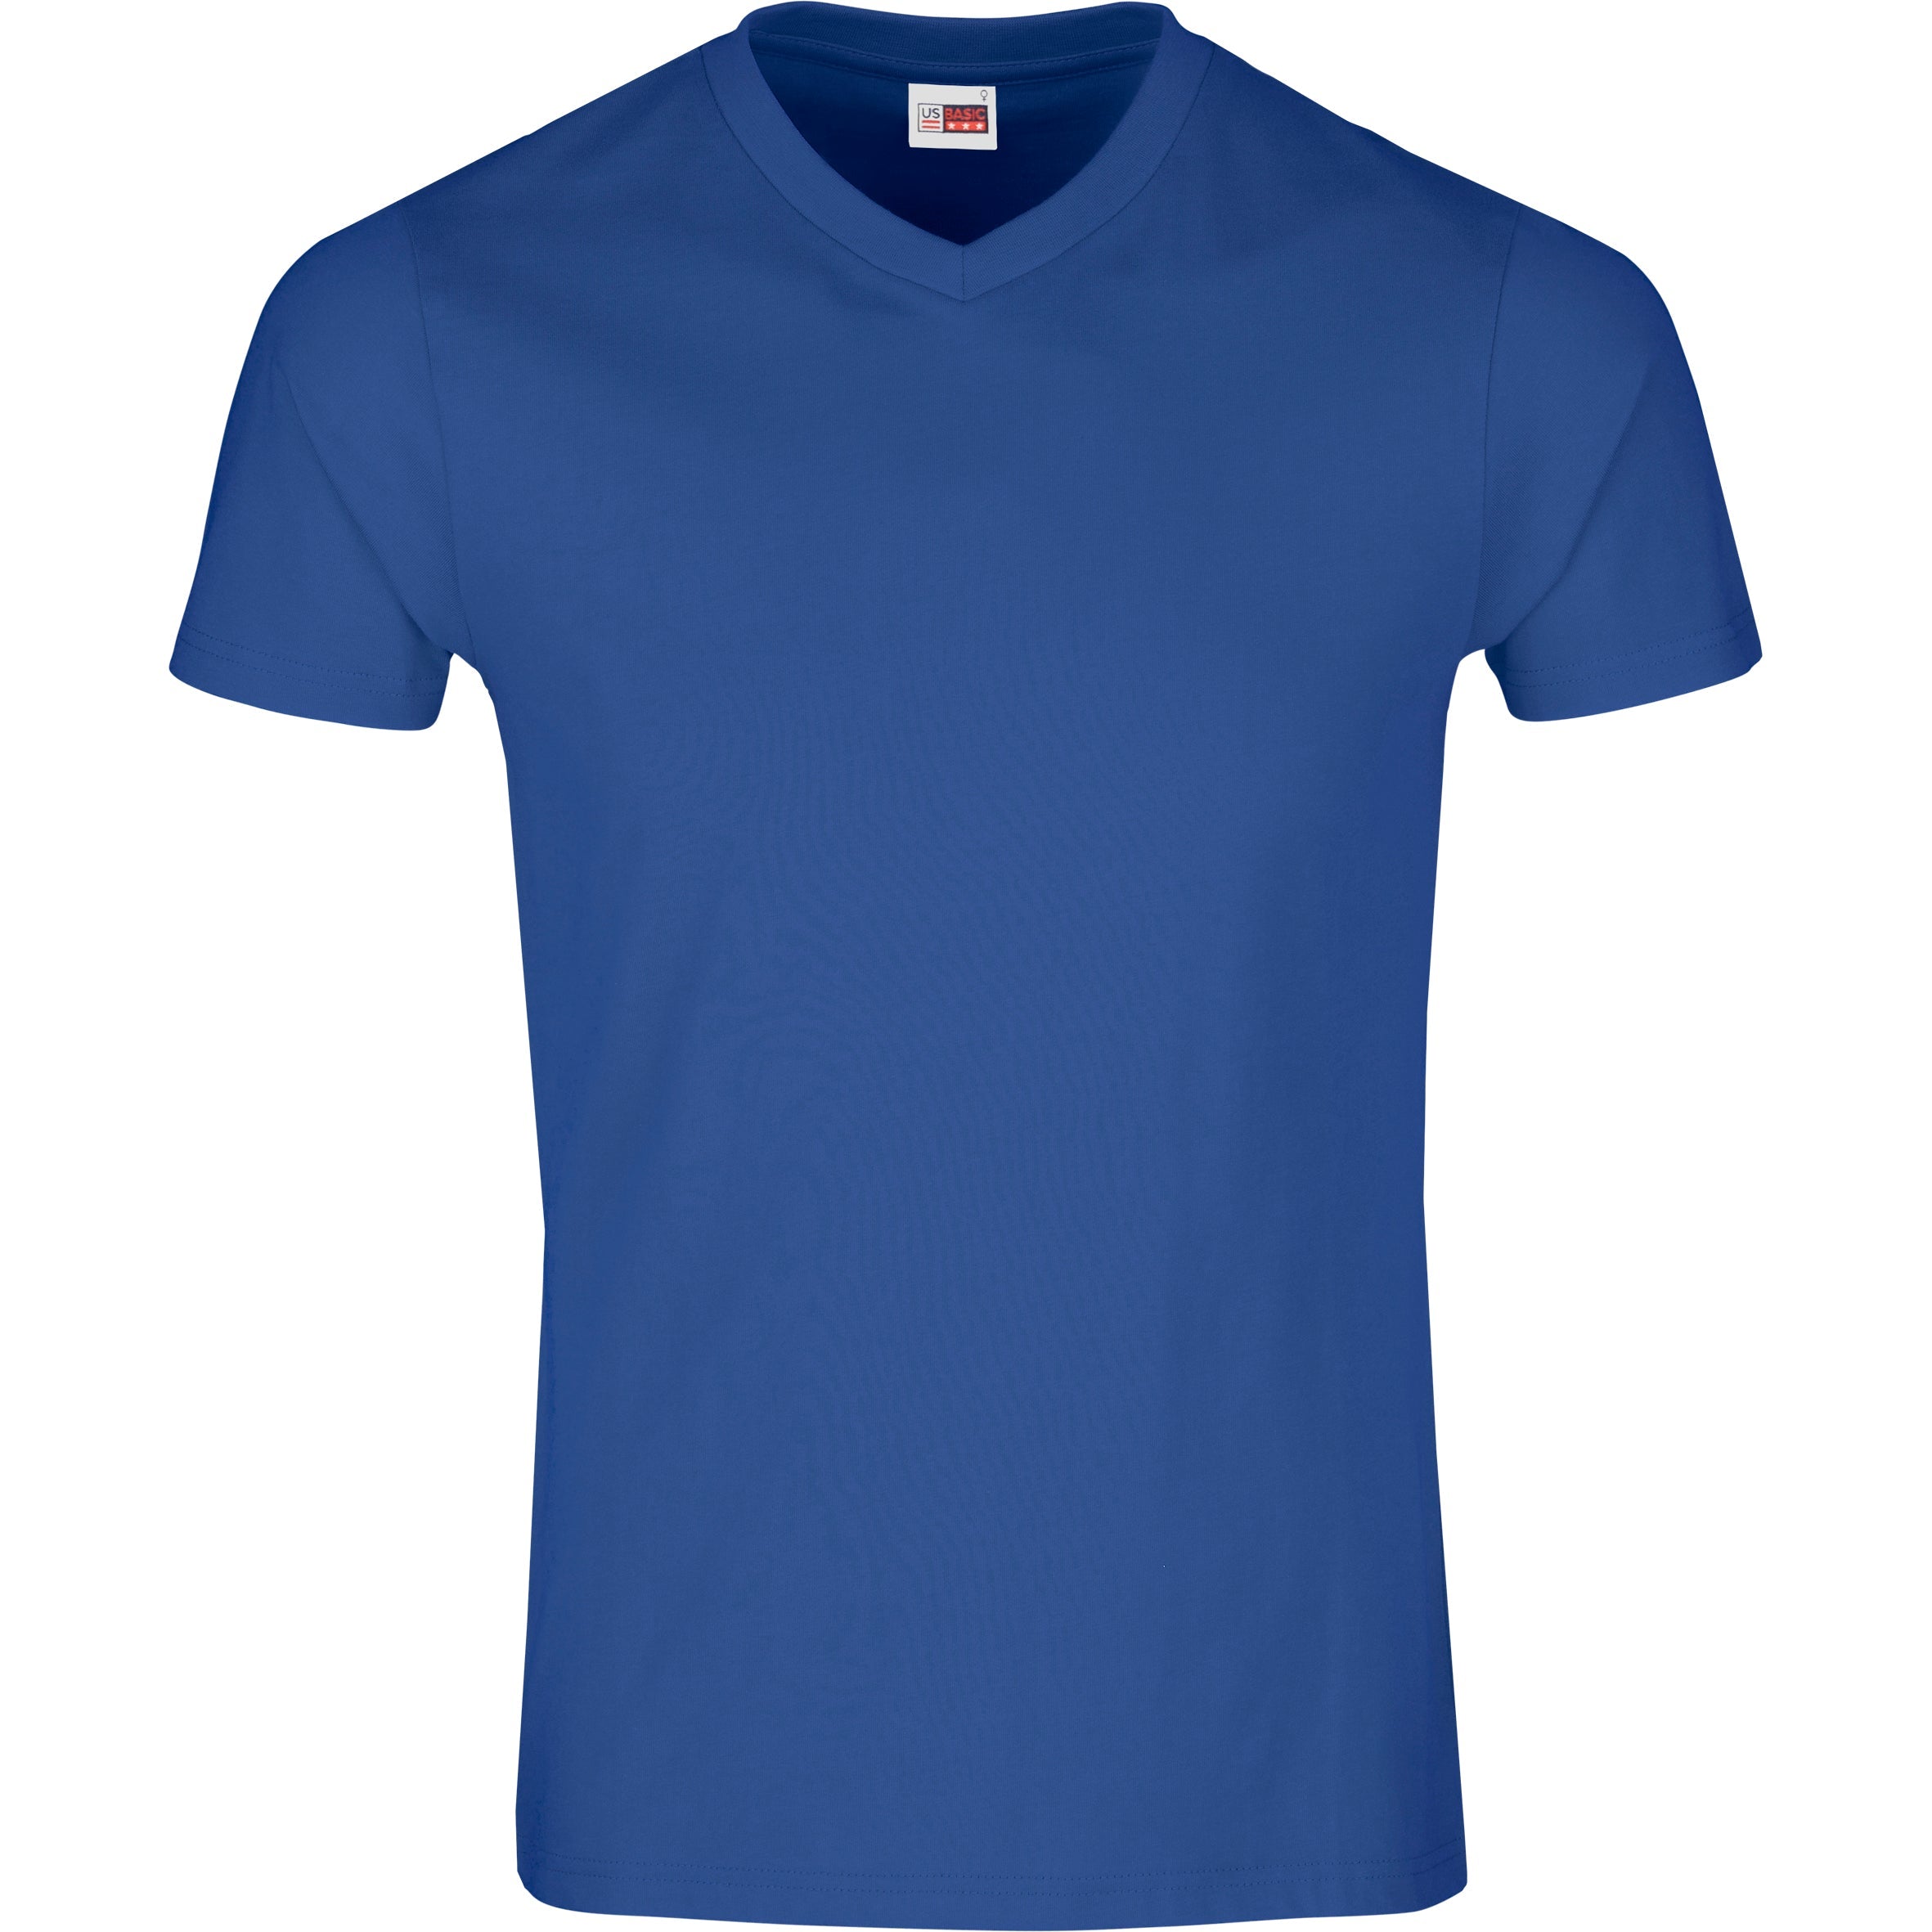 Mens Super Club 165 V-Neck T-Shirt-L-Royal Blue-RB